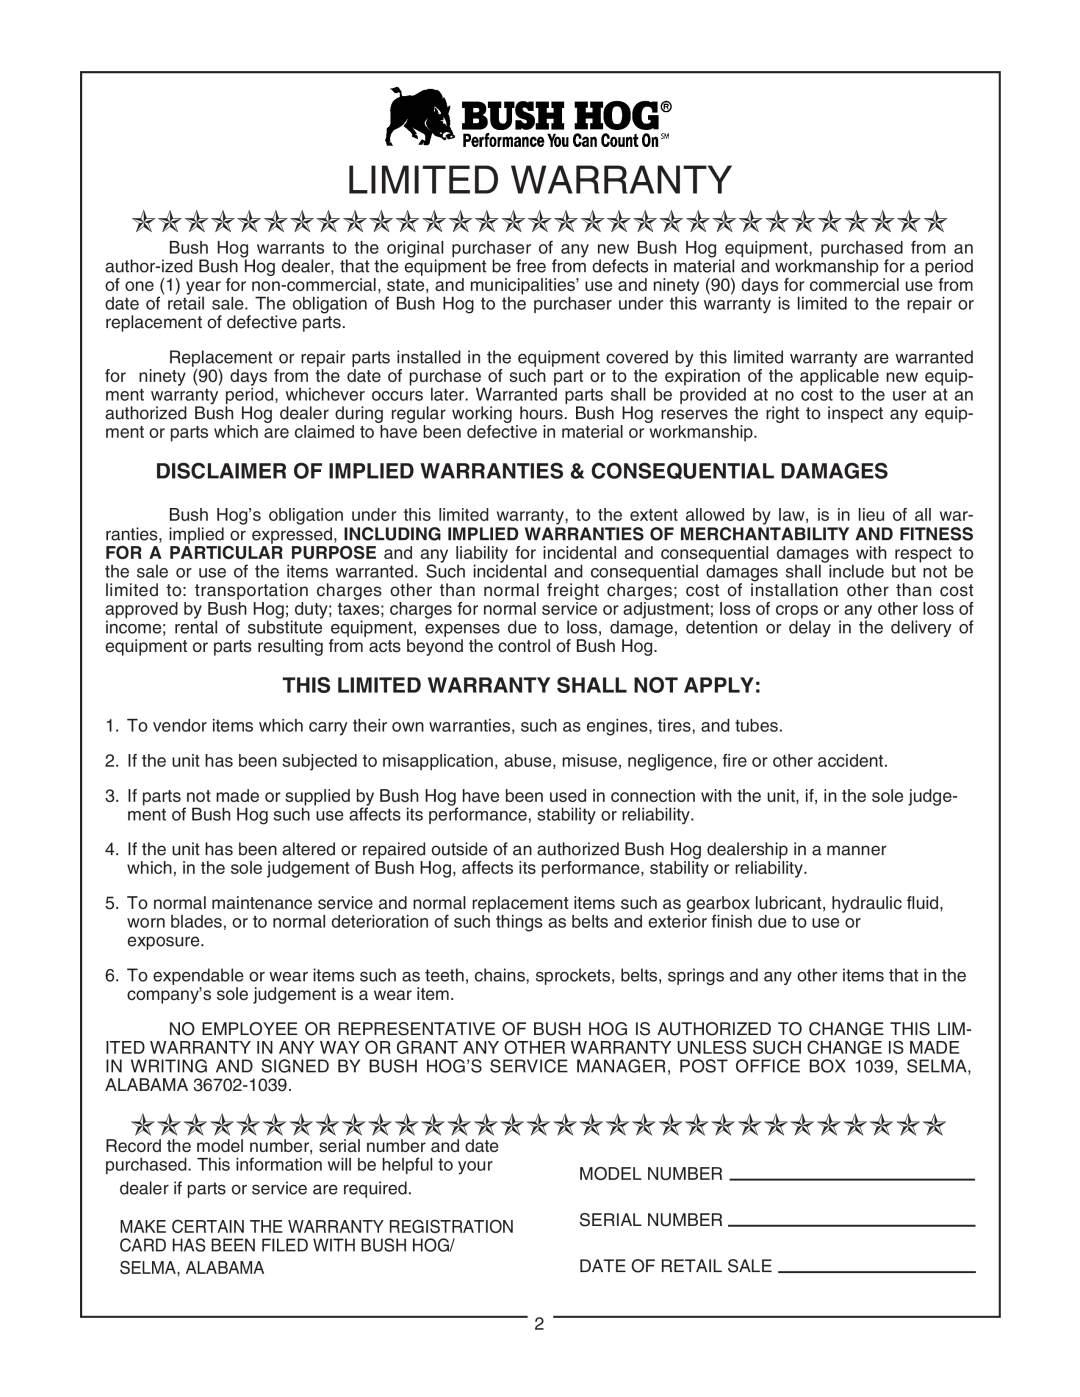 Bush Hog RDTH 84 manual This Limited Warranty Shall Not Apply, Ooooooooooooooooooooooooooooooo 